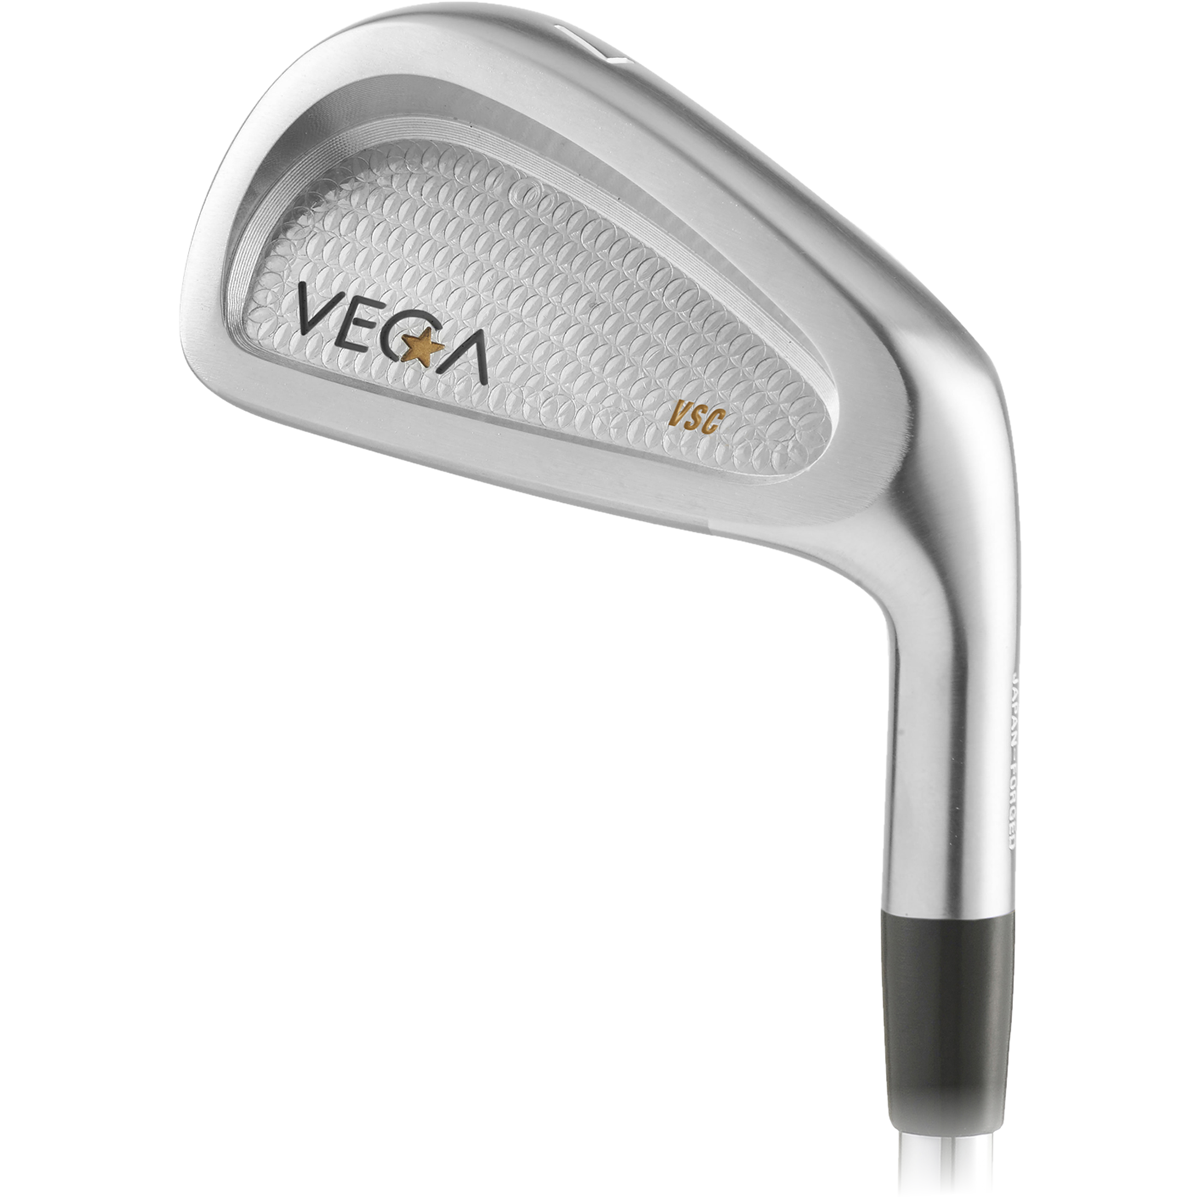 Vega Custom VSC Irons image 1